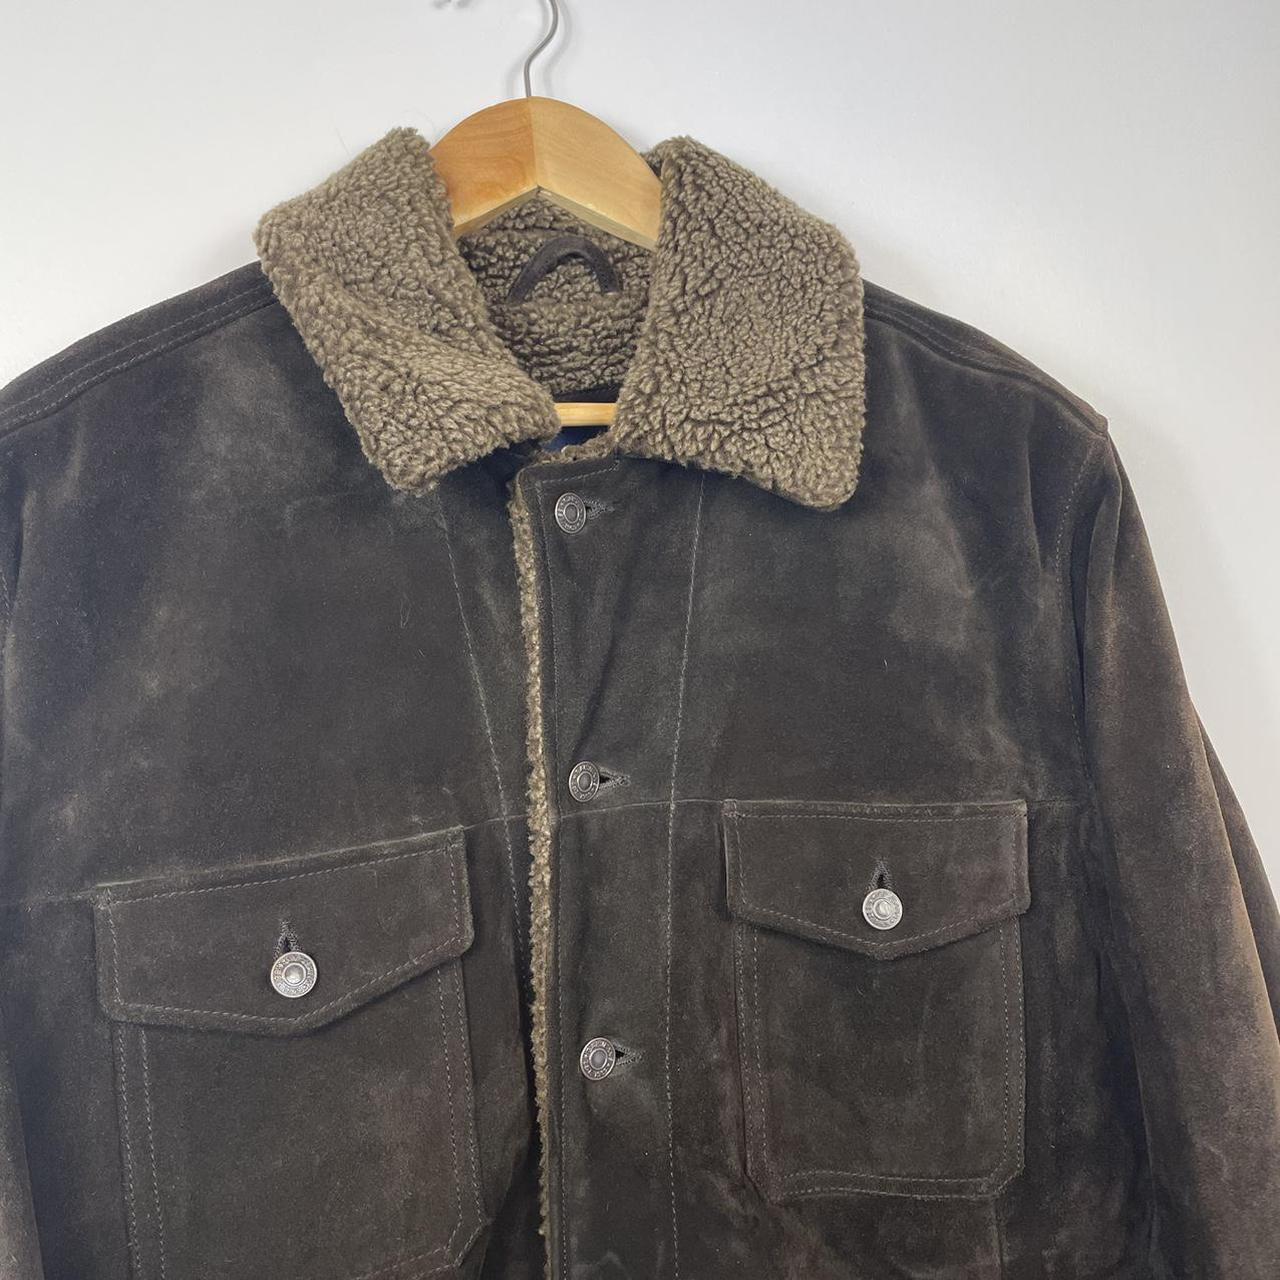 Vintage Gap Suede Brown Jacket with Sheraling... - Depop